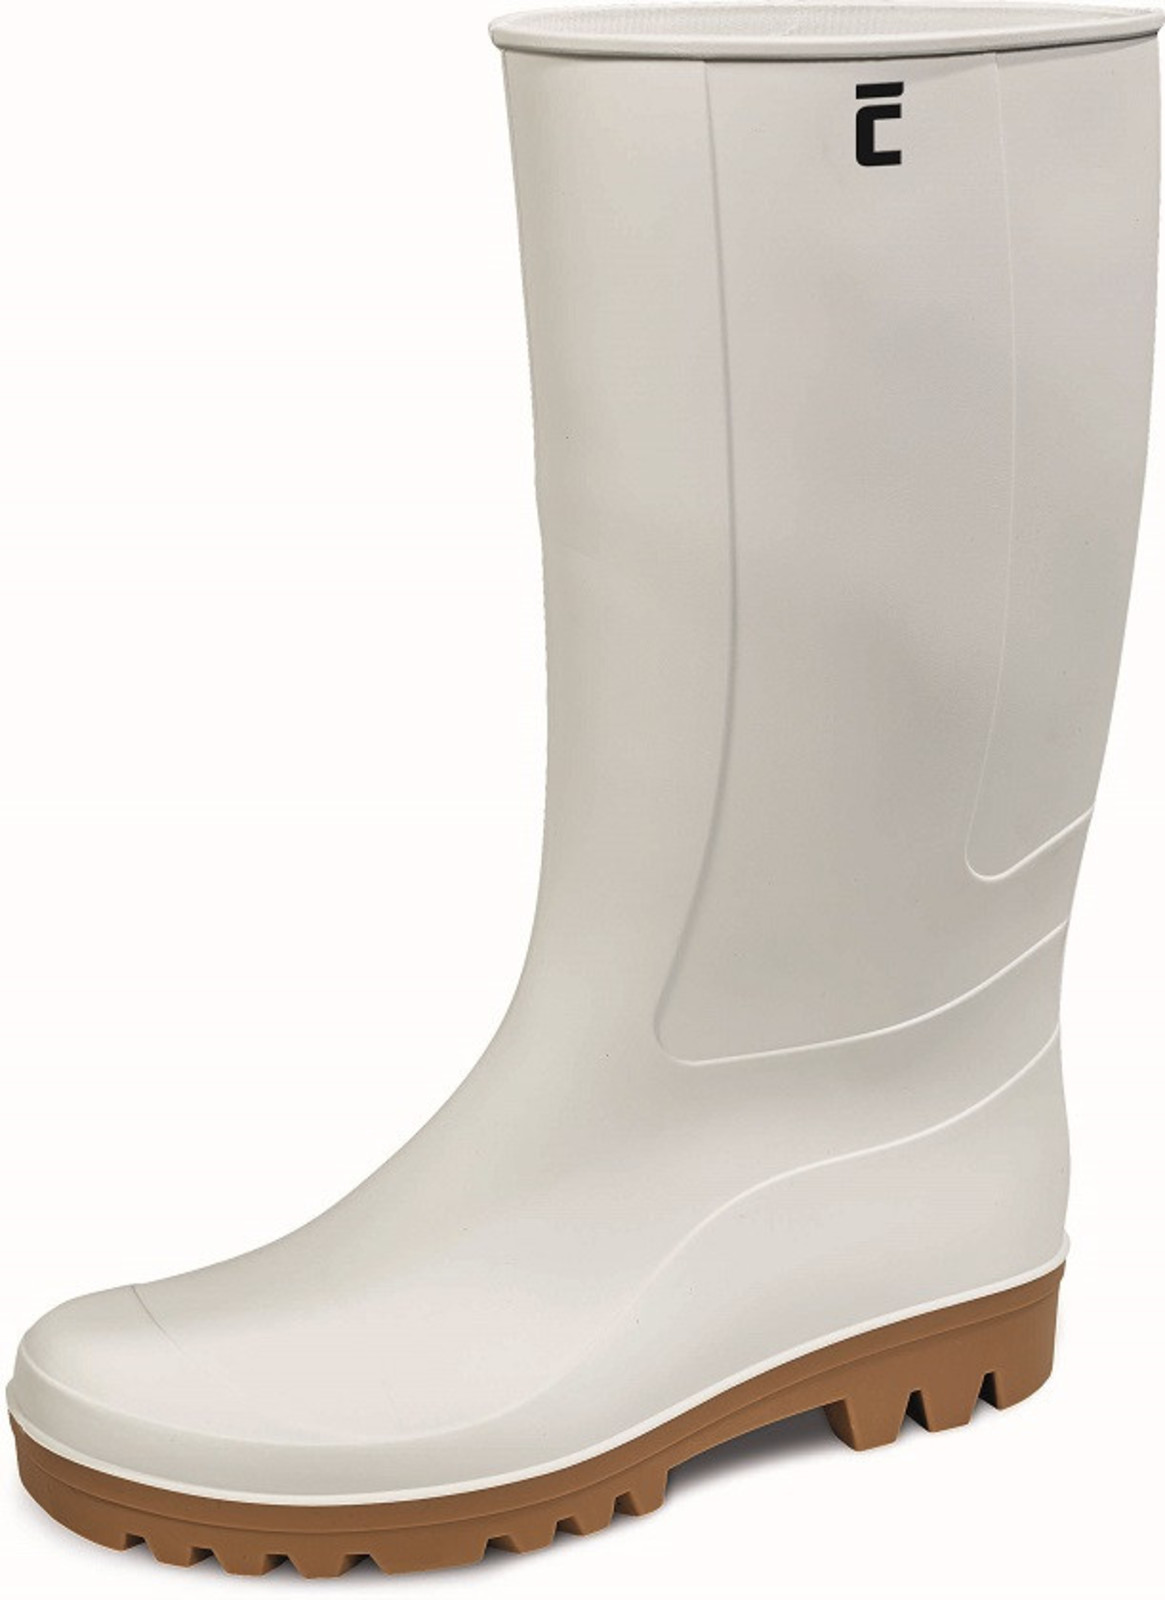 Gumáky Boots BC Food O4  - veľkosť: 39, farba: biela